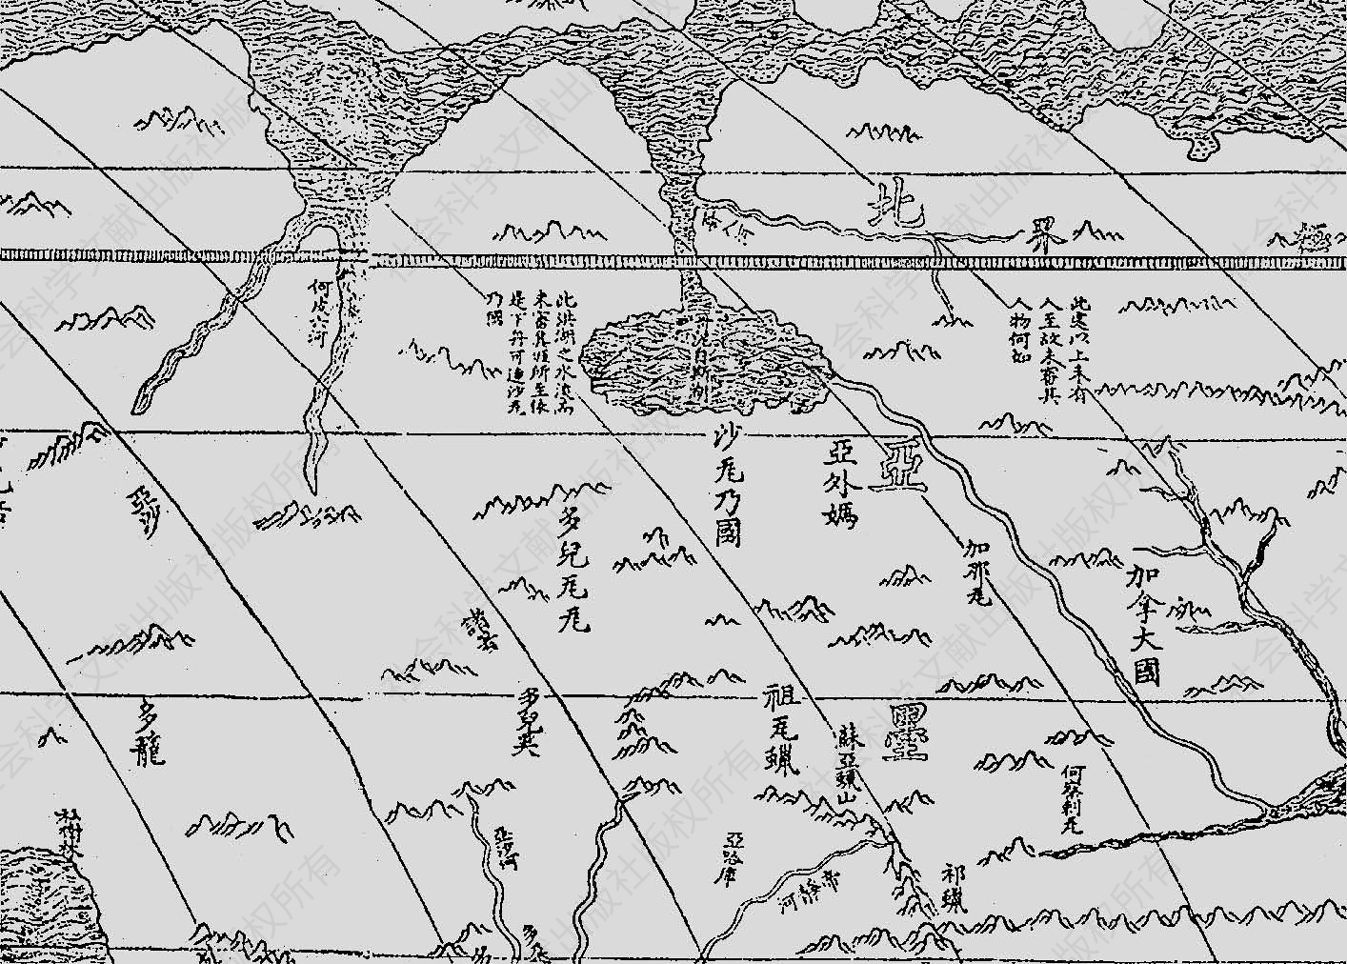 图1 利玛窦《坤舆万国全图》北美洲北部沿海